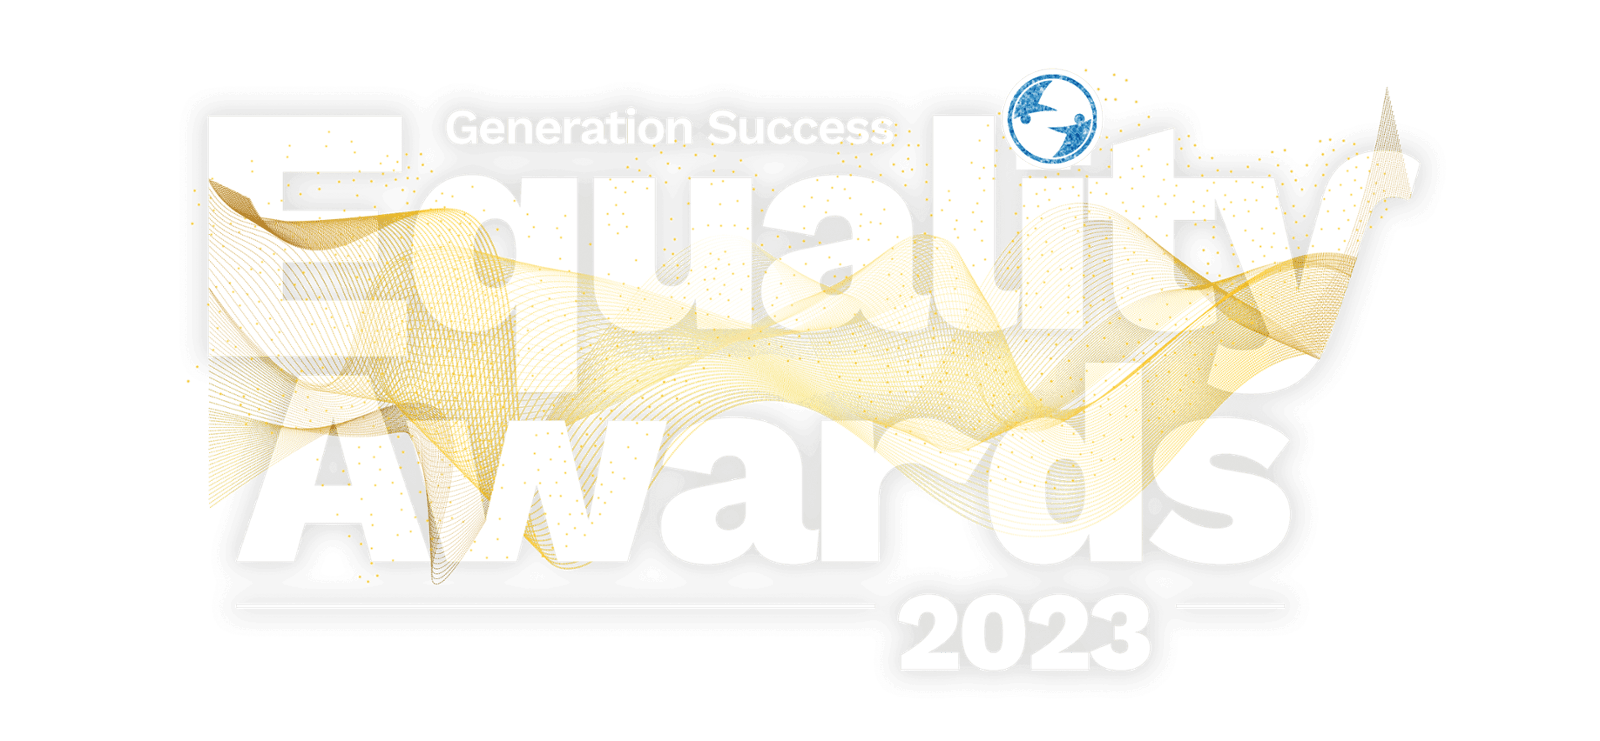 Generation Success an award-winning social enterprise